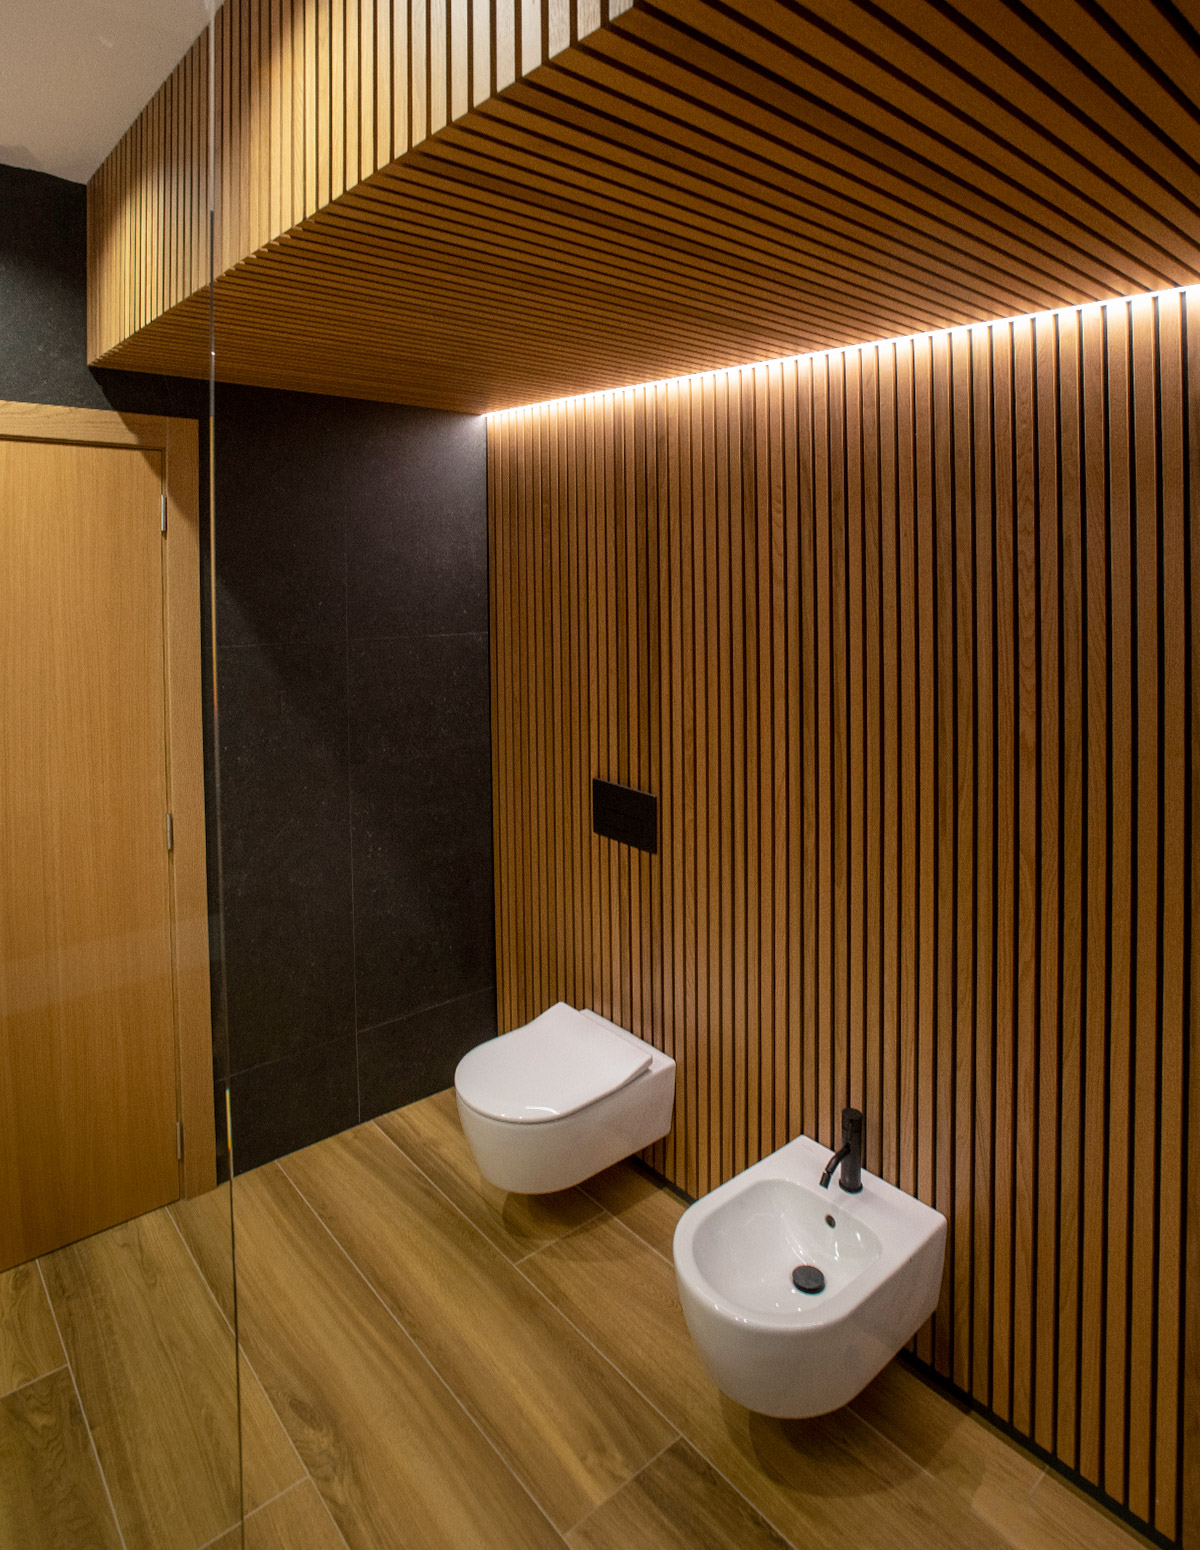 Vista de baño con sanitarios sobre madeira rastrelada e luz indirecta